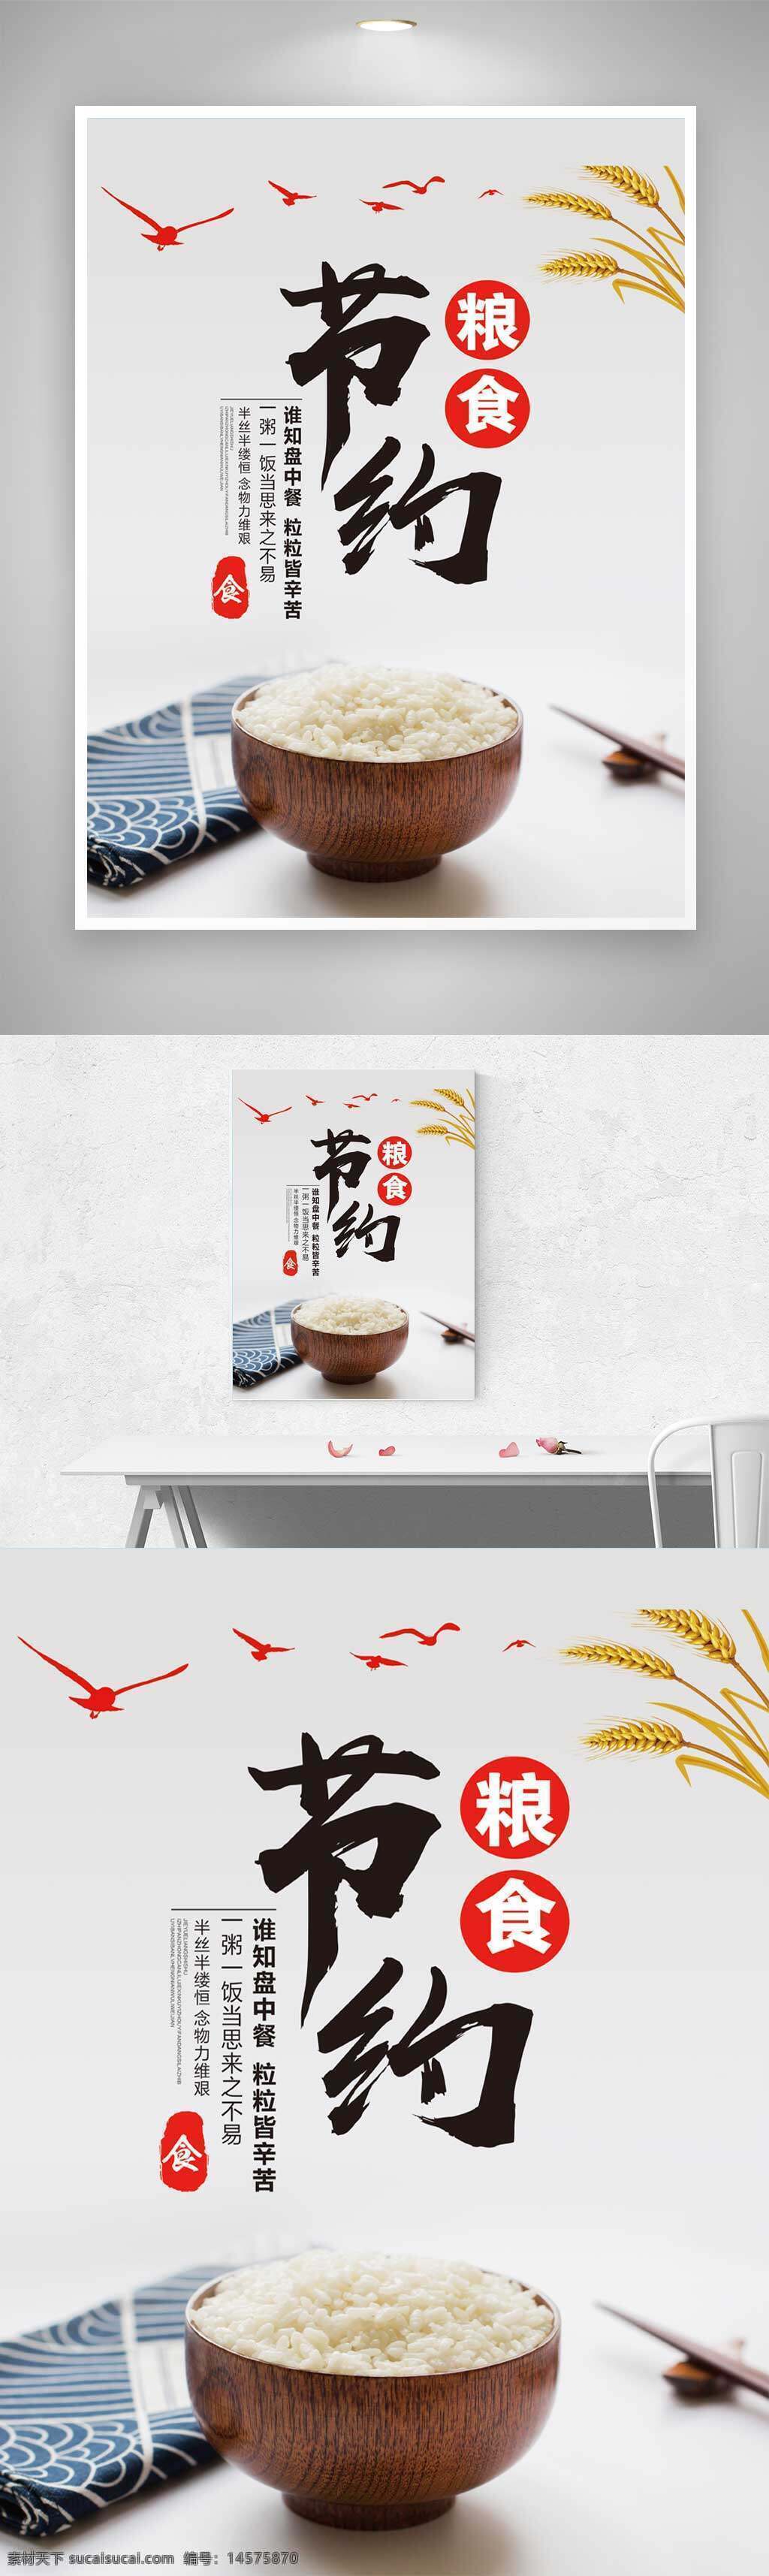 节约粮食 大米 稻谷 大雁 中式海报 餐厅海报 餐厅文化 食堂文化 珍惜粮食